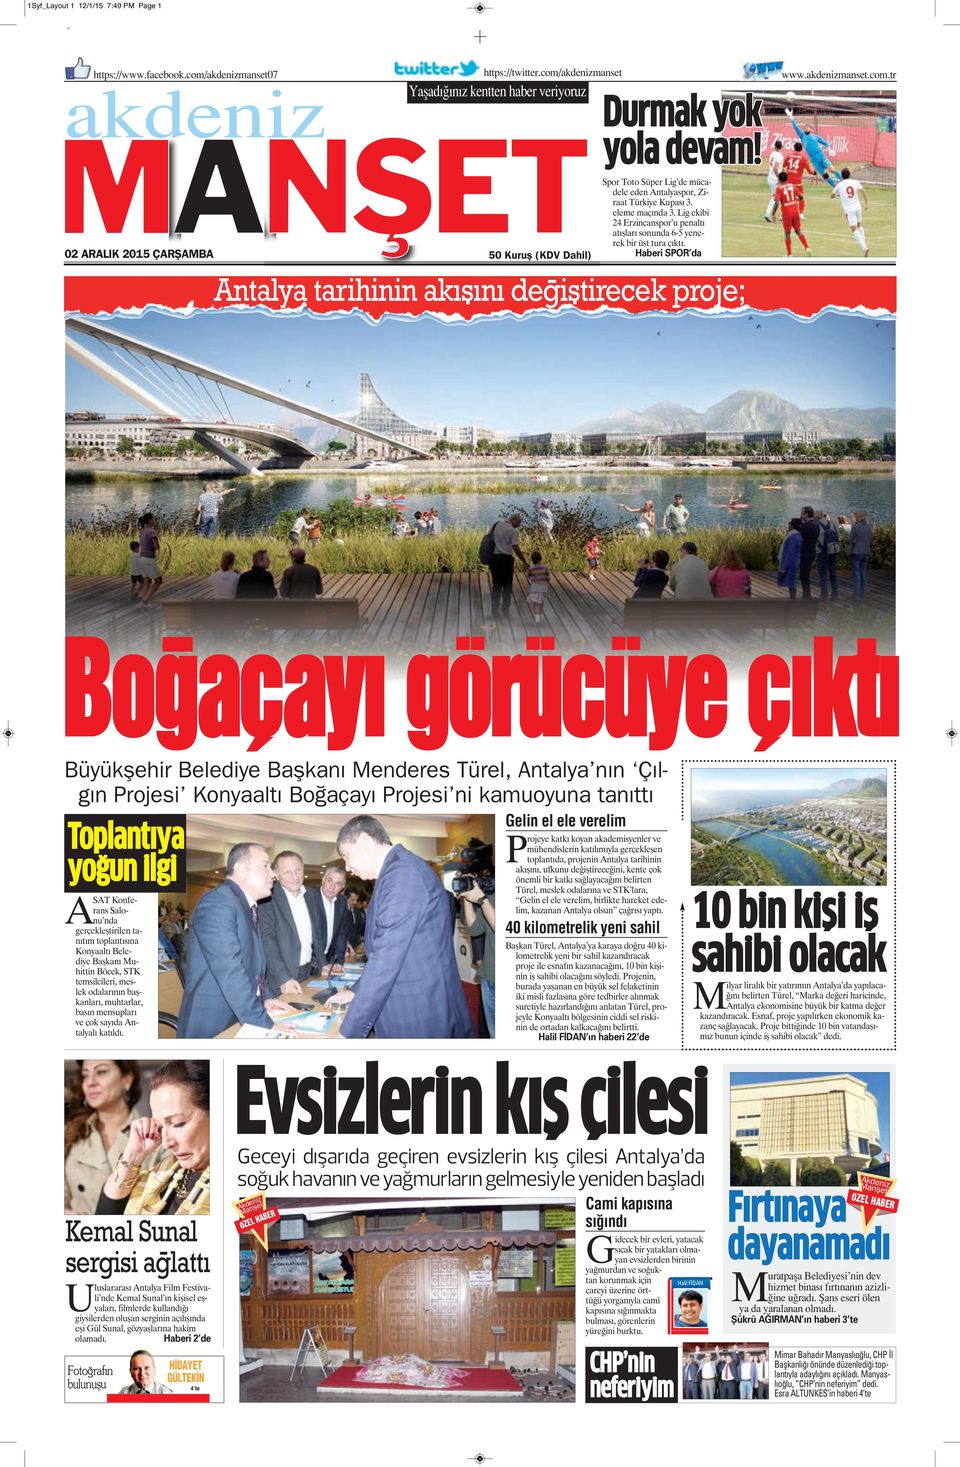 Boğaçayıgörücüyeçıktı Büyükşehir Belediye Başkanı Menderes Türel, Antalya  nın Çılgın Projesi Konyaaltı Boğaçayı Projesi ni kamuoyuna tanıttı - PDF  Ücretsiz indirin